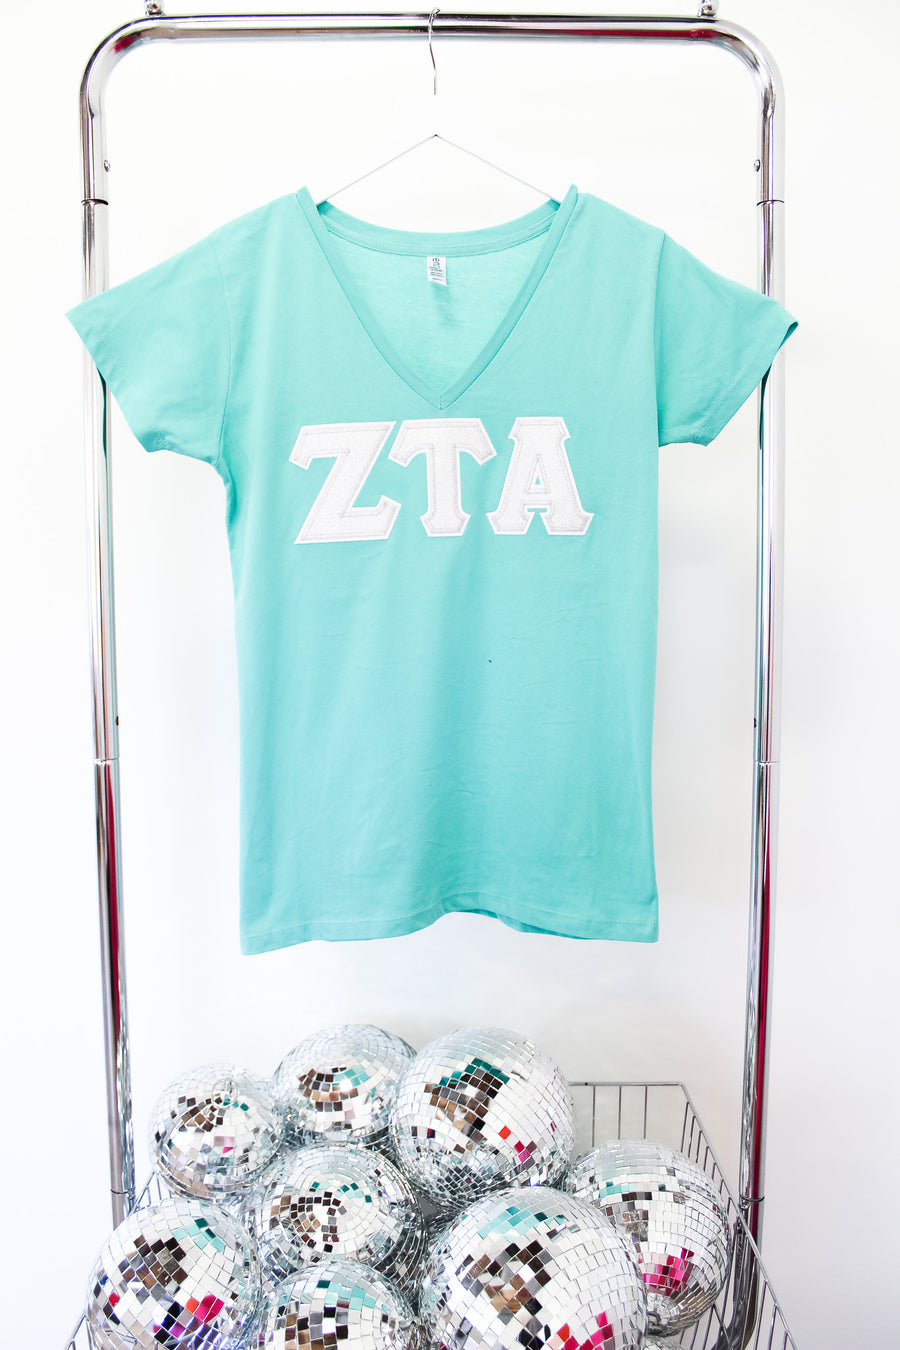 Zeta Tau Alpha Embroidered Letter V-Neck Tee - TEAL